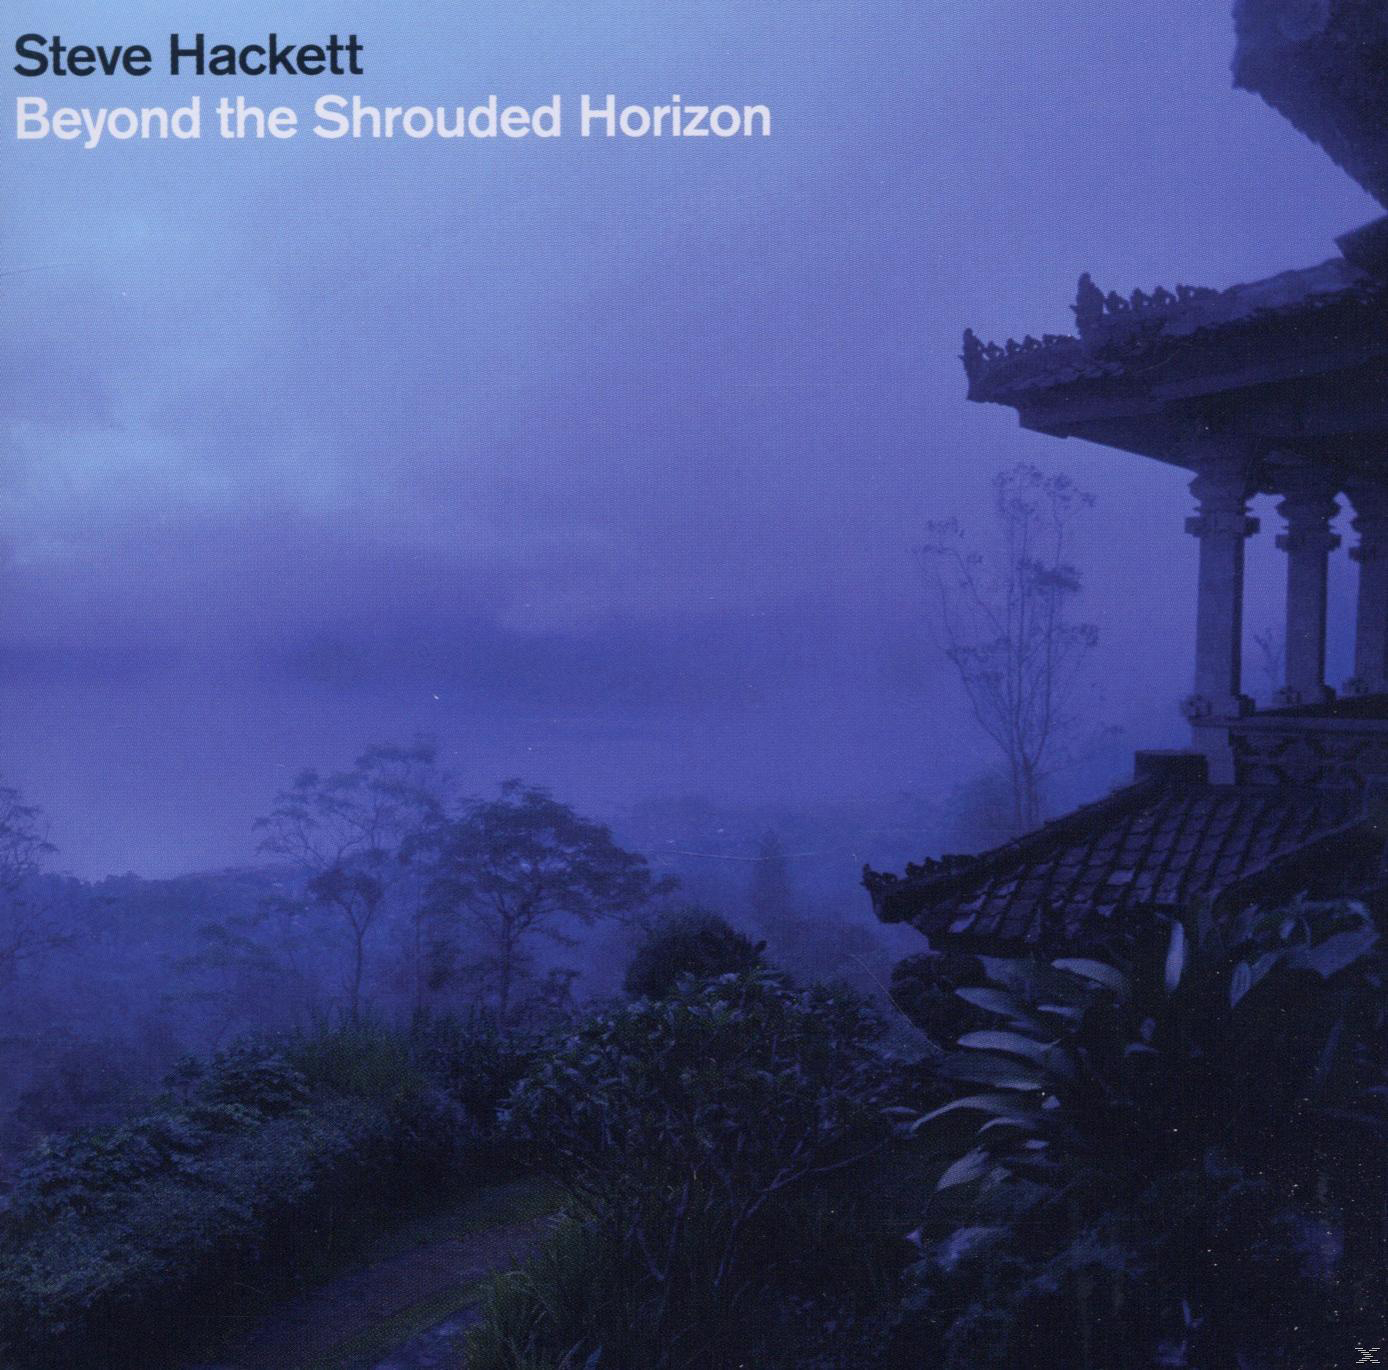 (CD) Horizon Shrouded The Beyond Steve Hackett - -